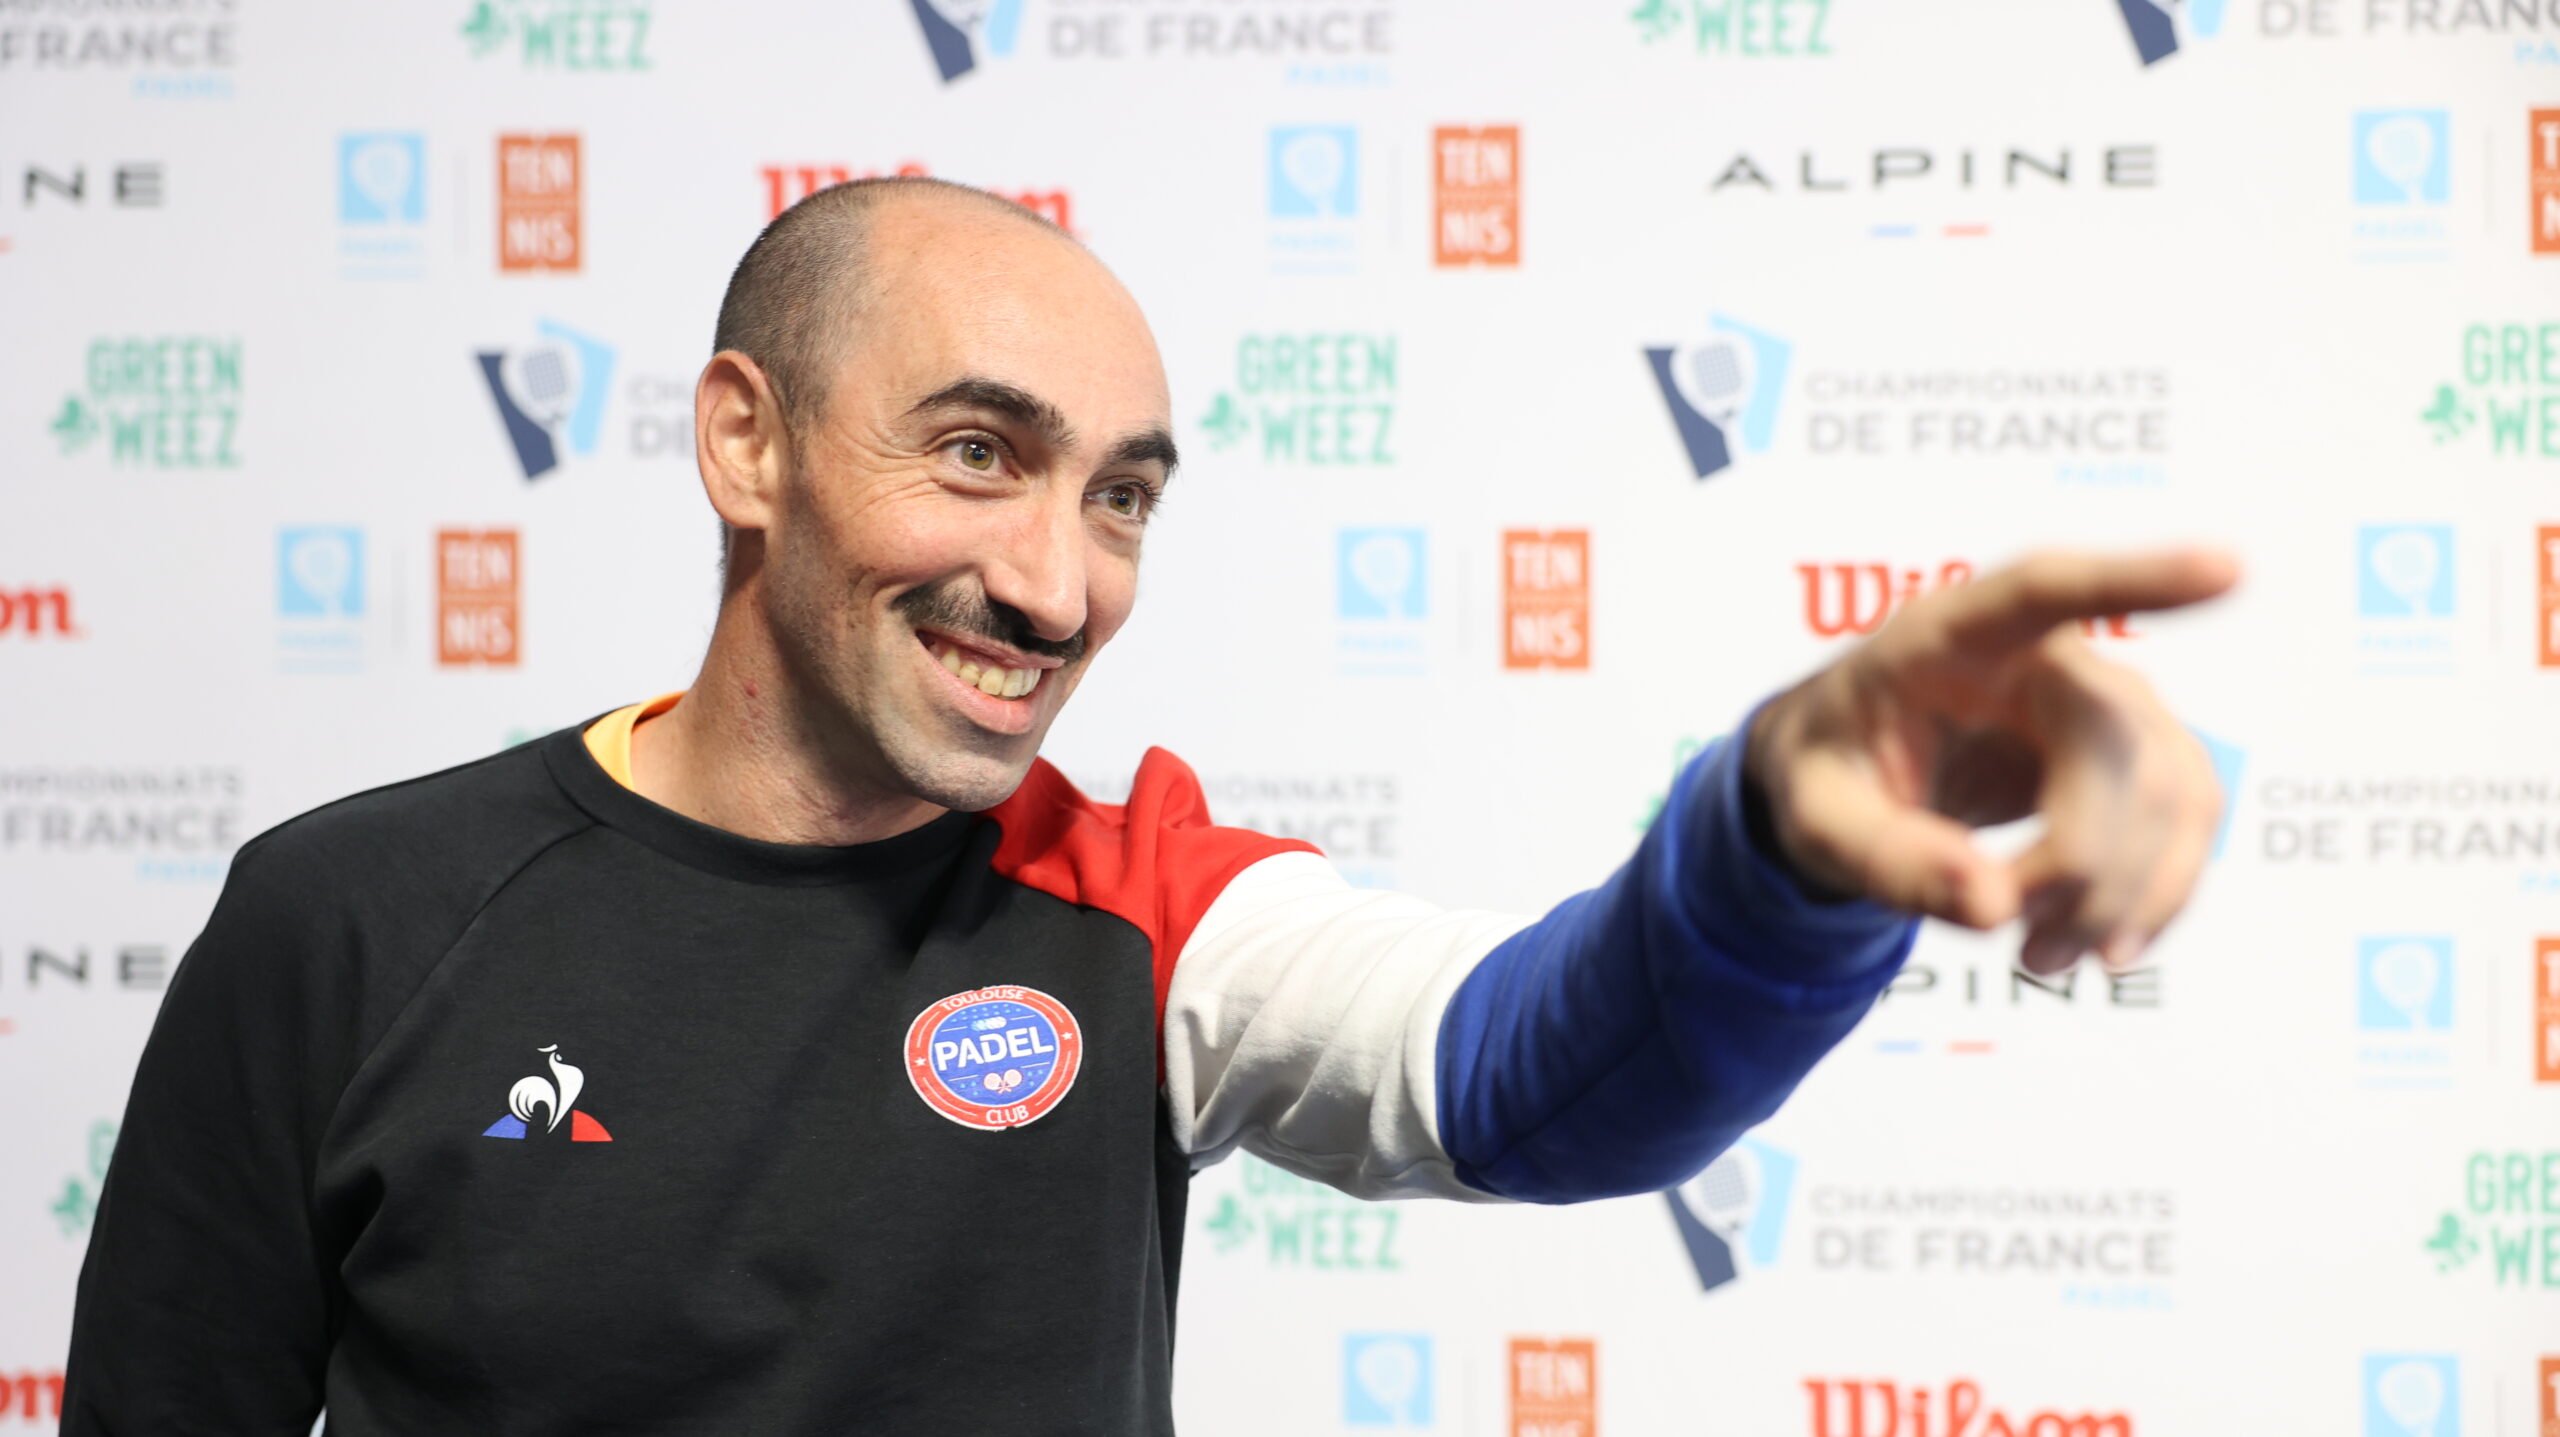 Christophe Semmartin: “Minha forma de coaching, um discurso positivo”